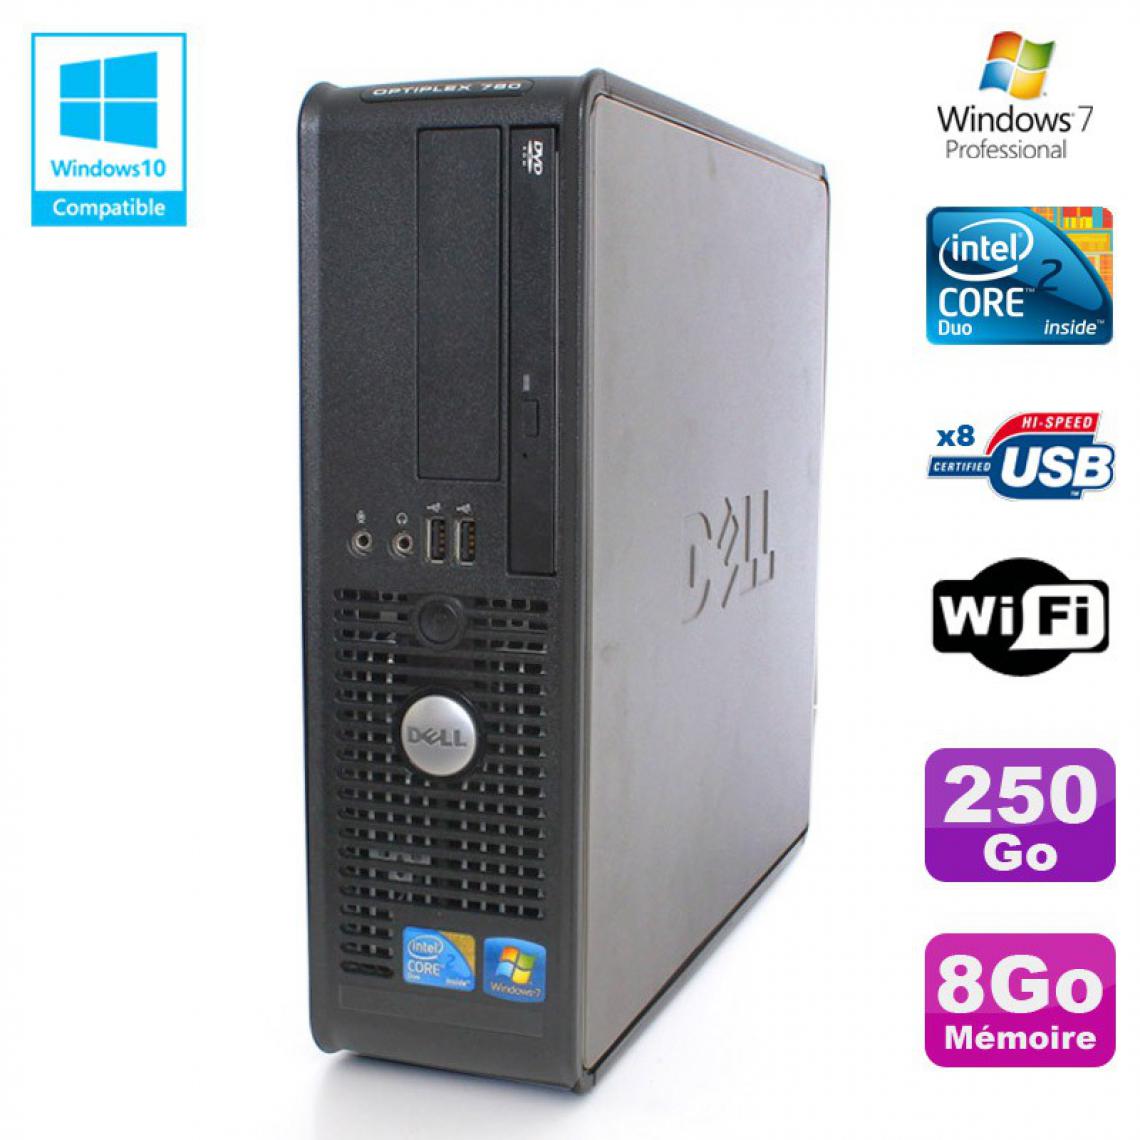 Dell - PC DELL Optiplex 780 Sff Core 2 Duo E8400 3Ghz 8Go DDR3 250Go WIFI Win 7 Pro - PC Fixe